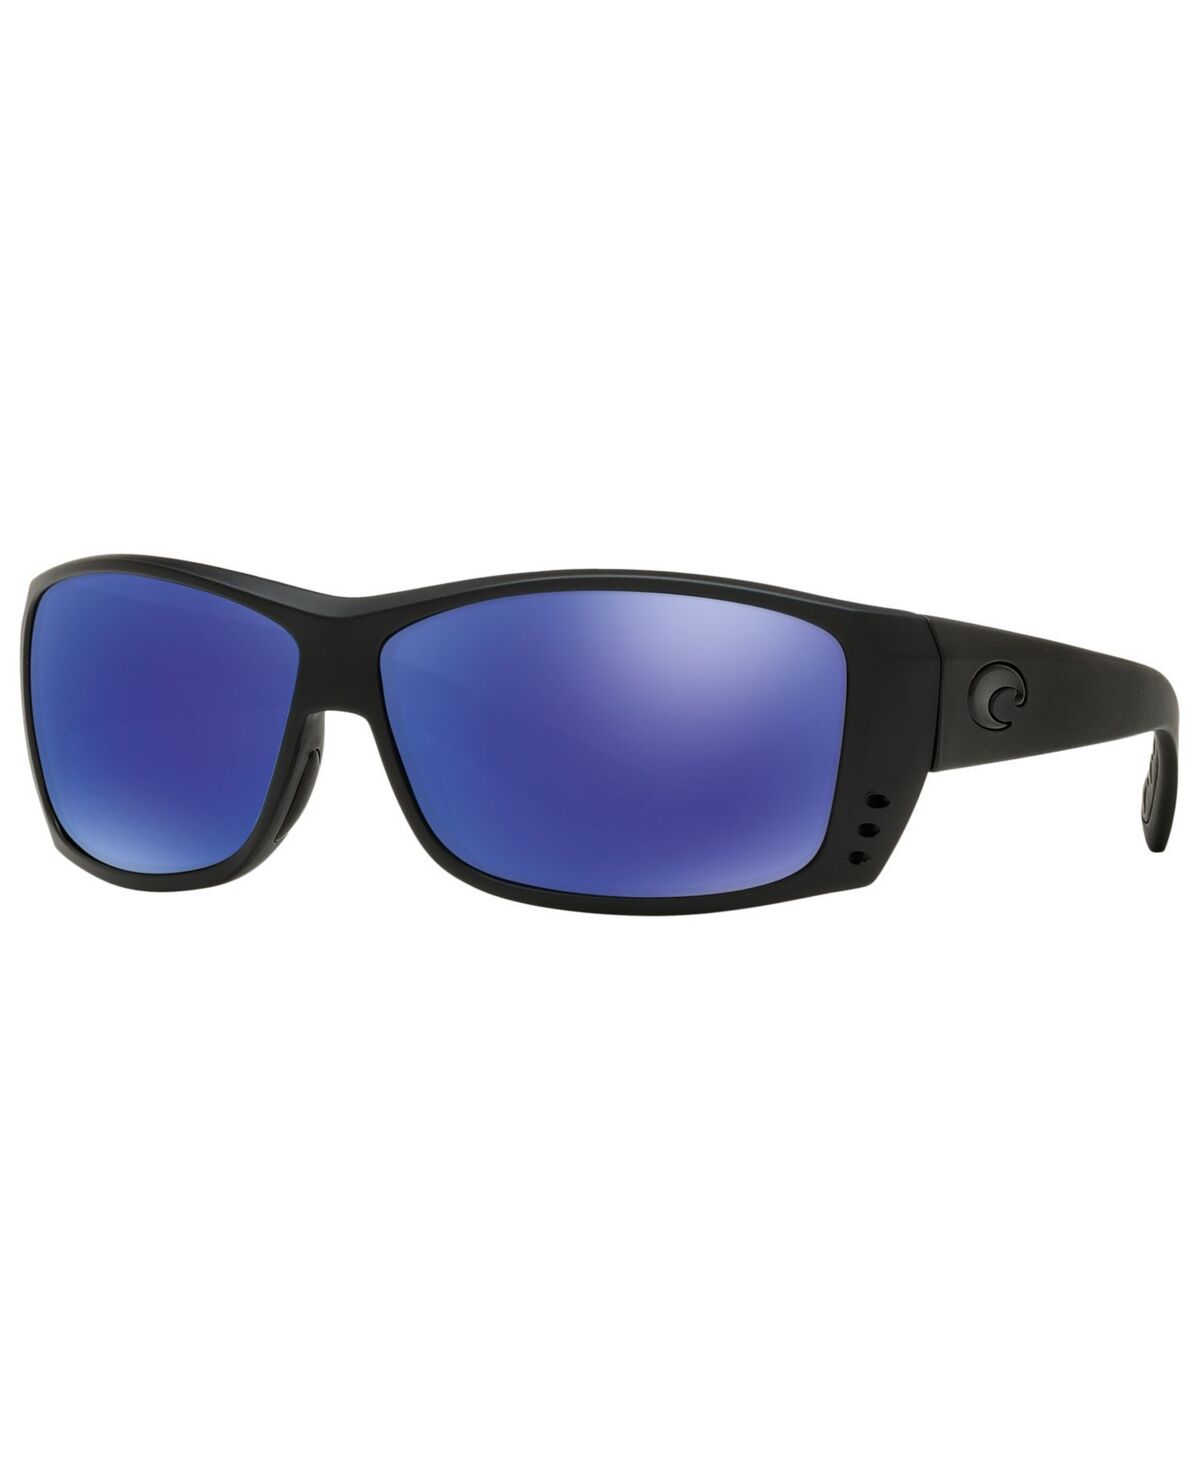 Costa Del Mar Polarized Sunglasses, Cat Cay 61P - BLACK BLACK/ BLUE MIRROR POLAR